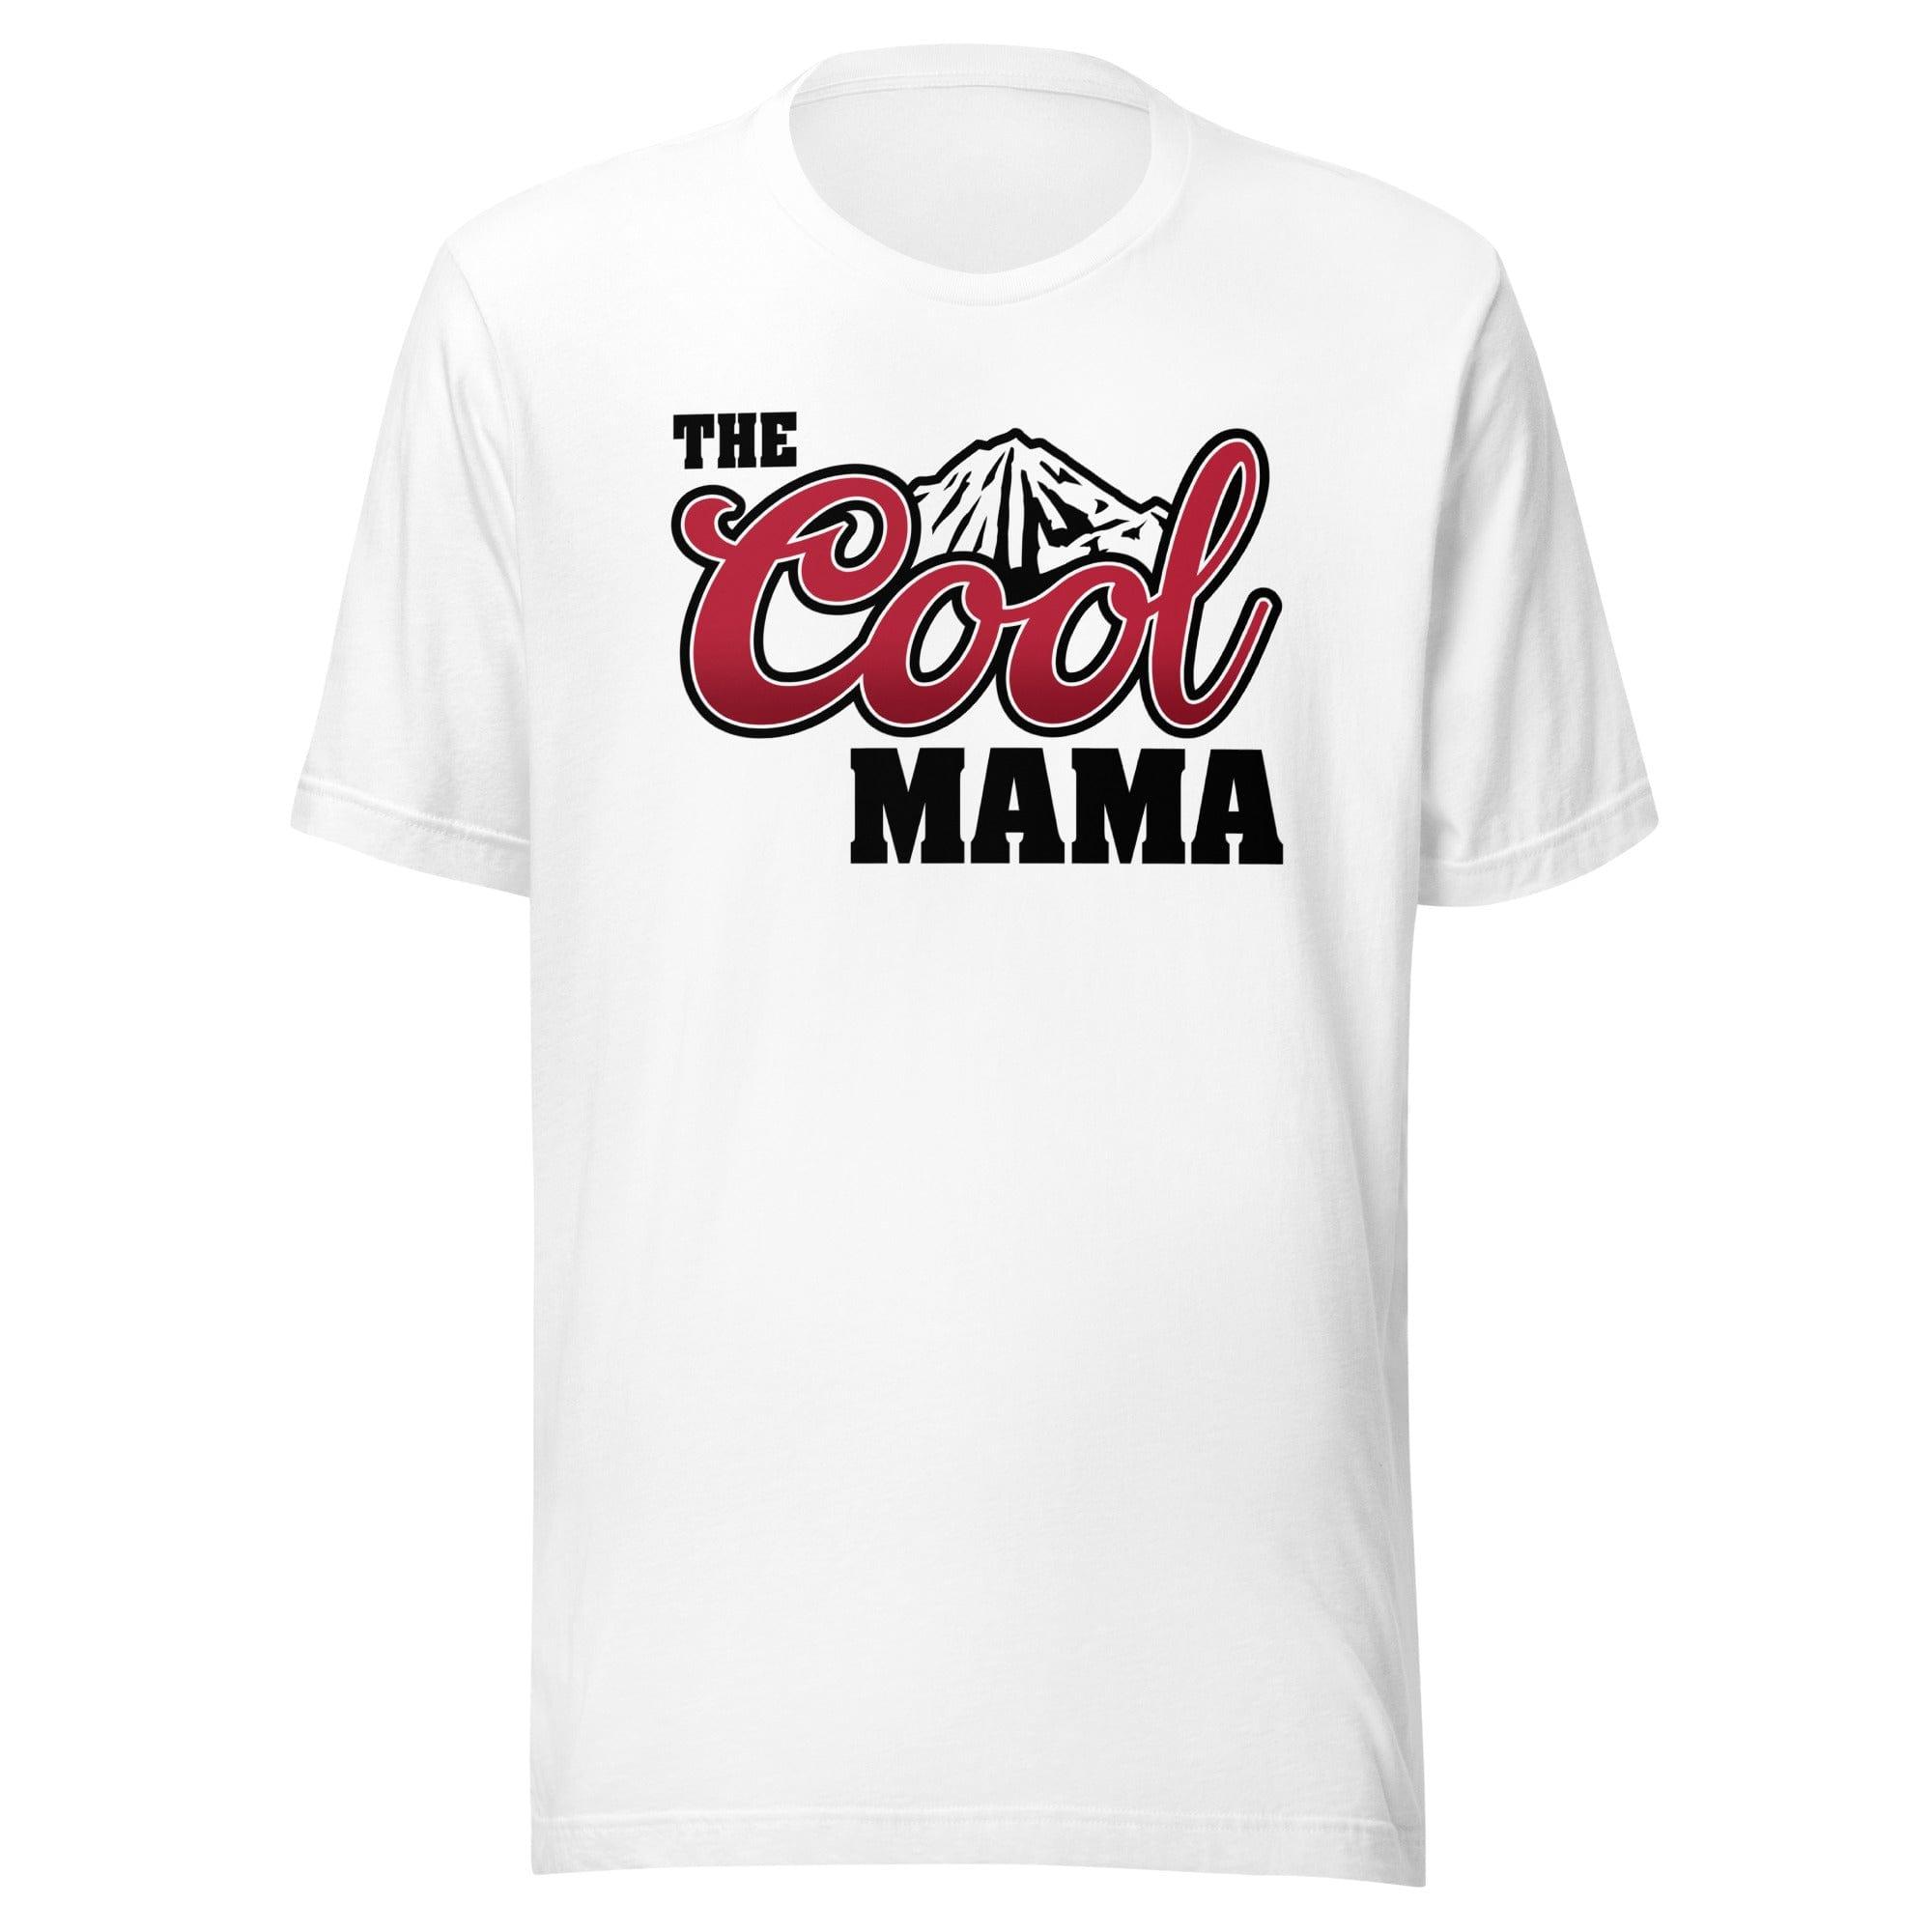 Mother's Day T-shirt Cool Mama Short Sleeve Top - TopKoalaTee